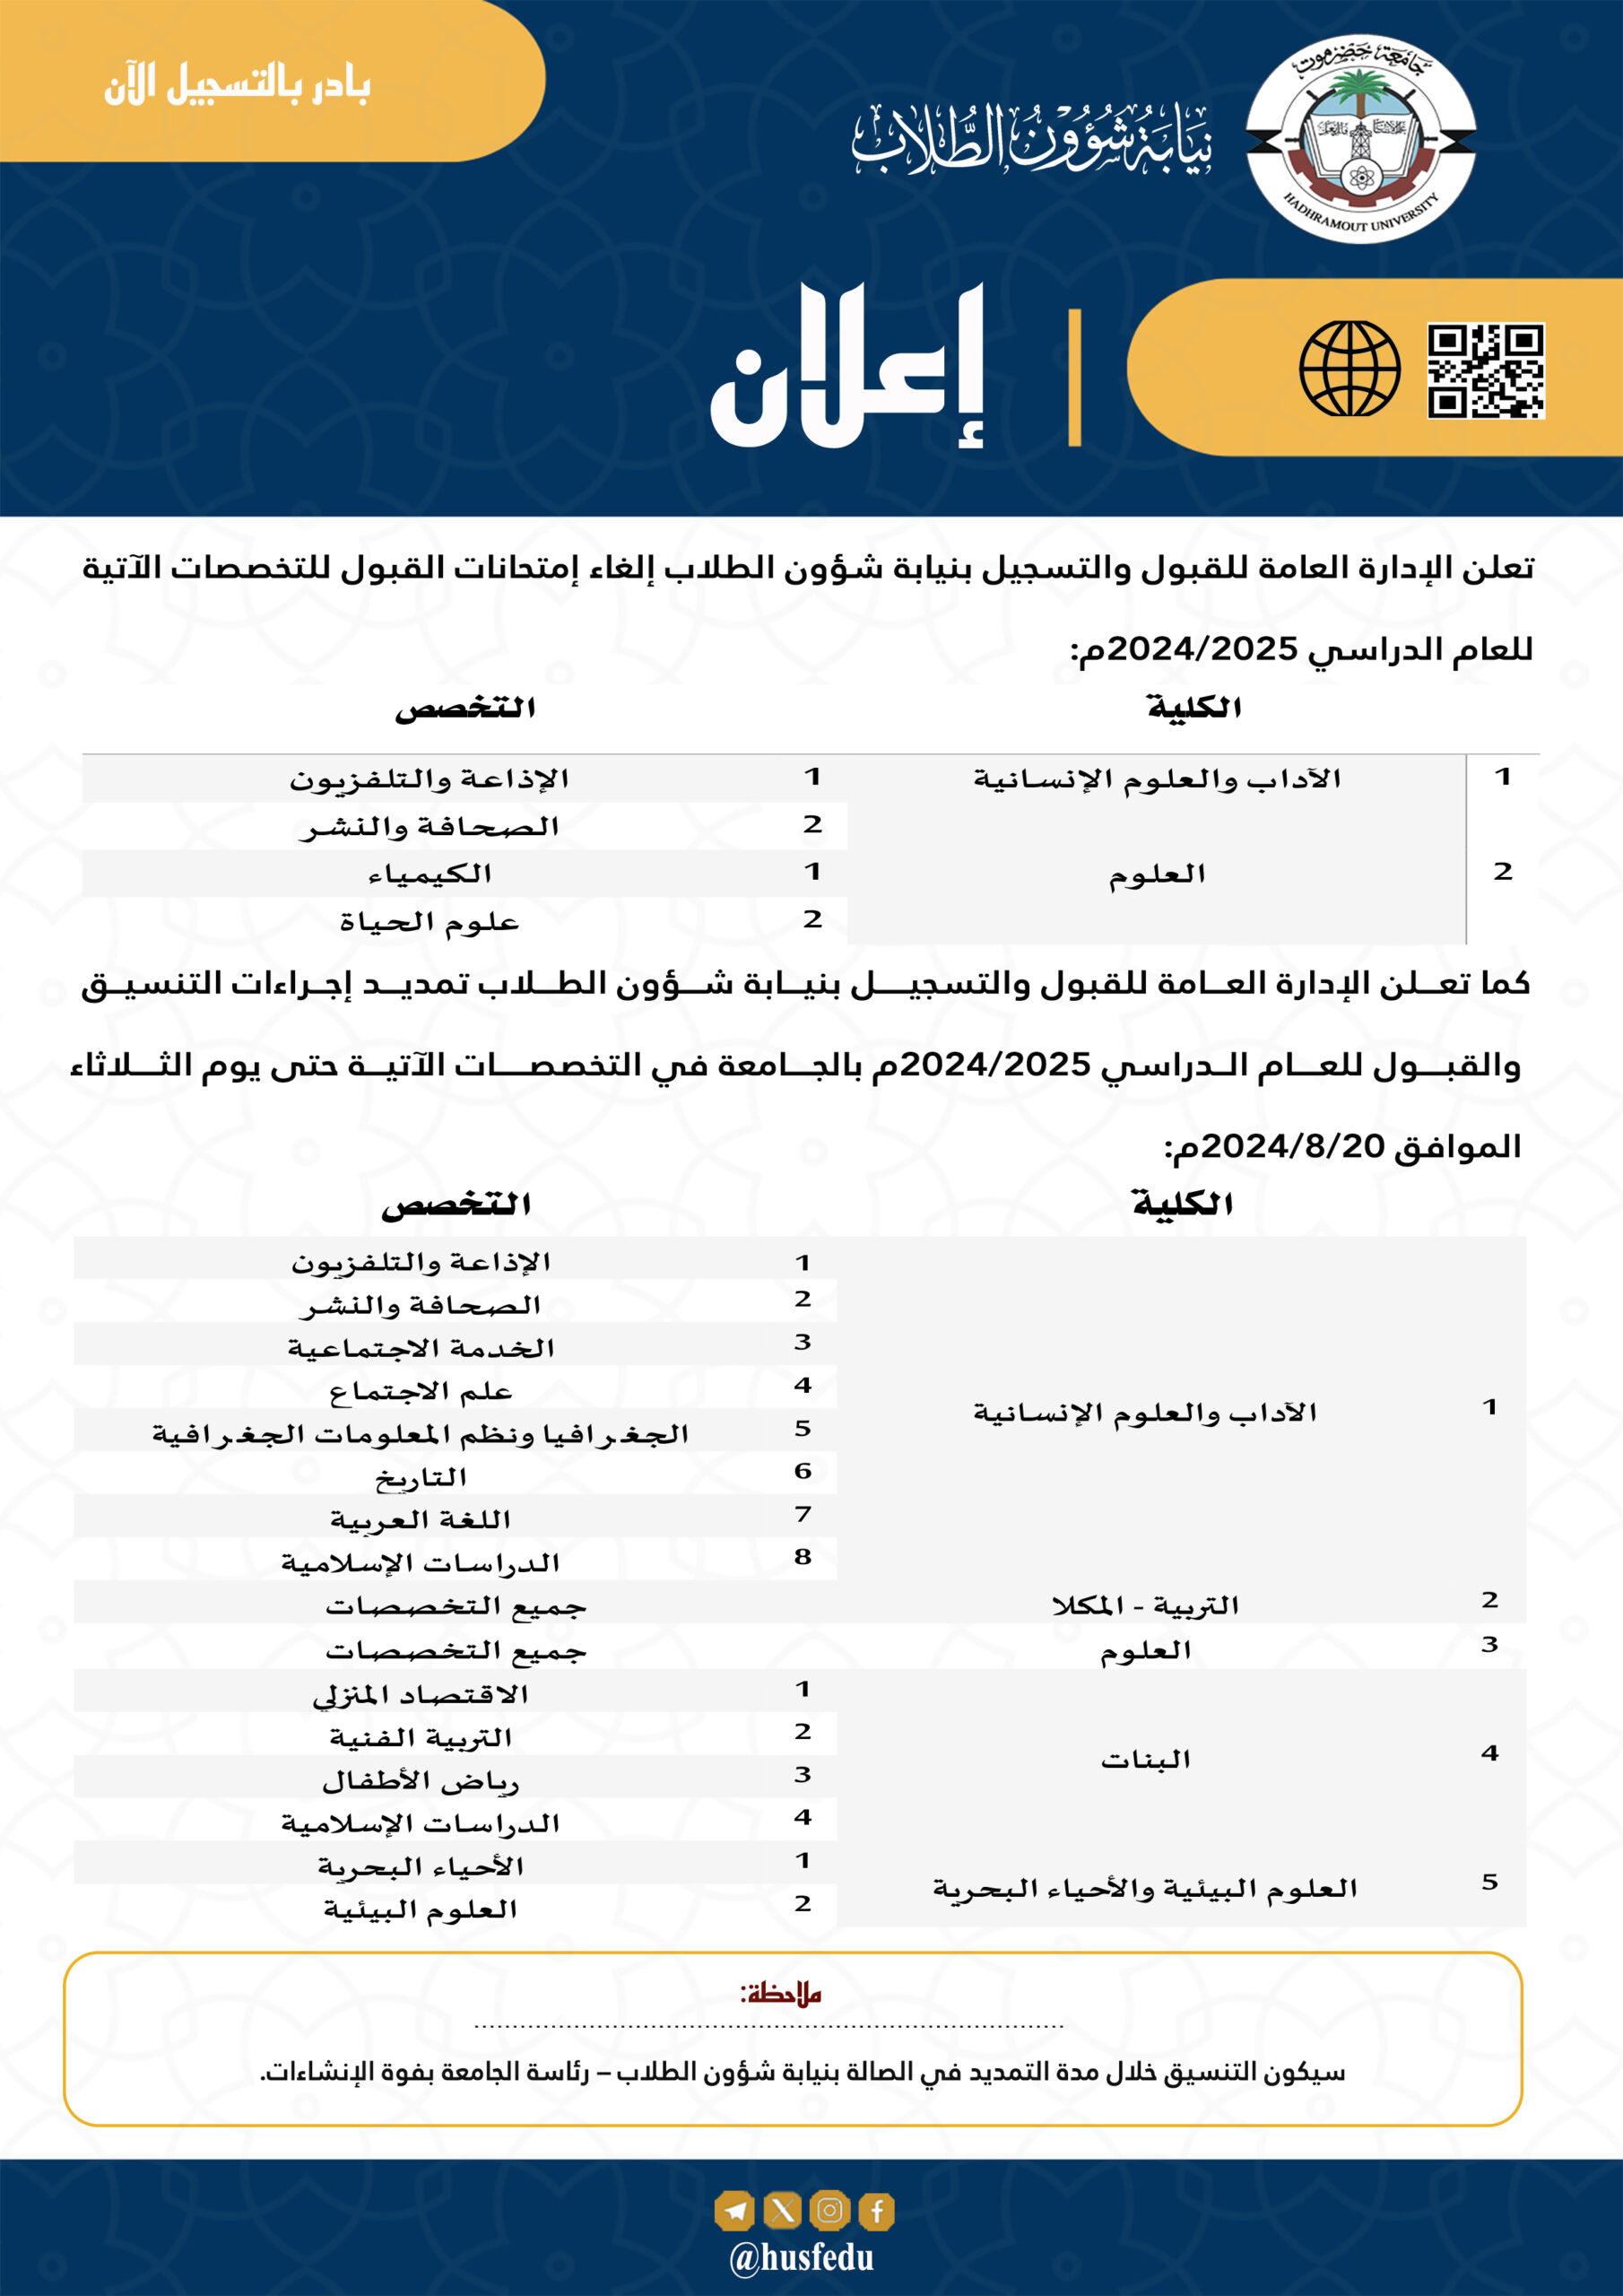 نيابة شؤون الطلاب جامعة حضرموت تعلن إلغاء اختبارات المفاضلة في بعض التخصصـــات للعام الدراسي 2025/2024م